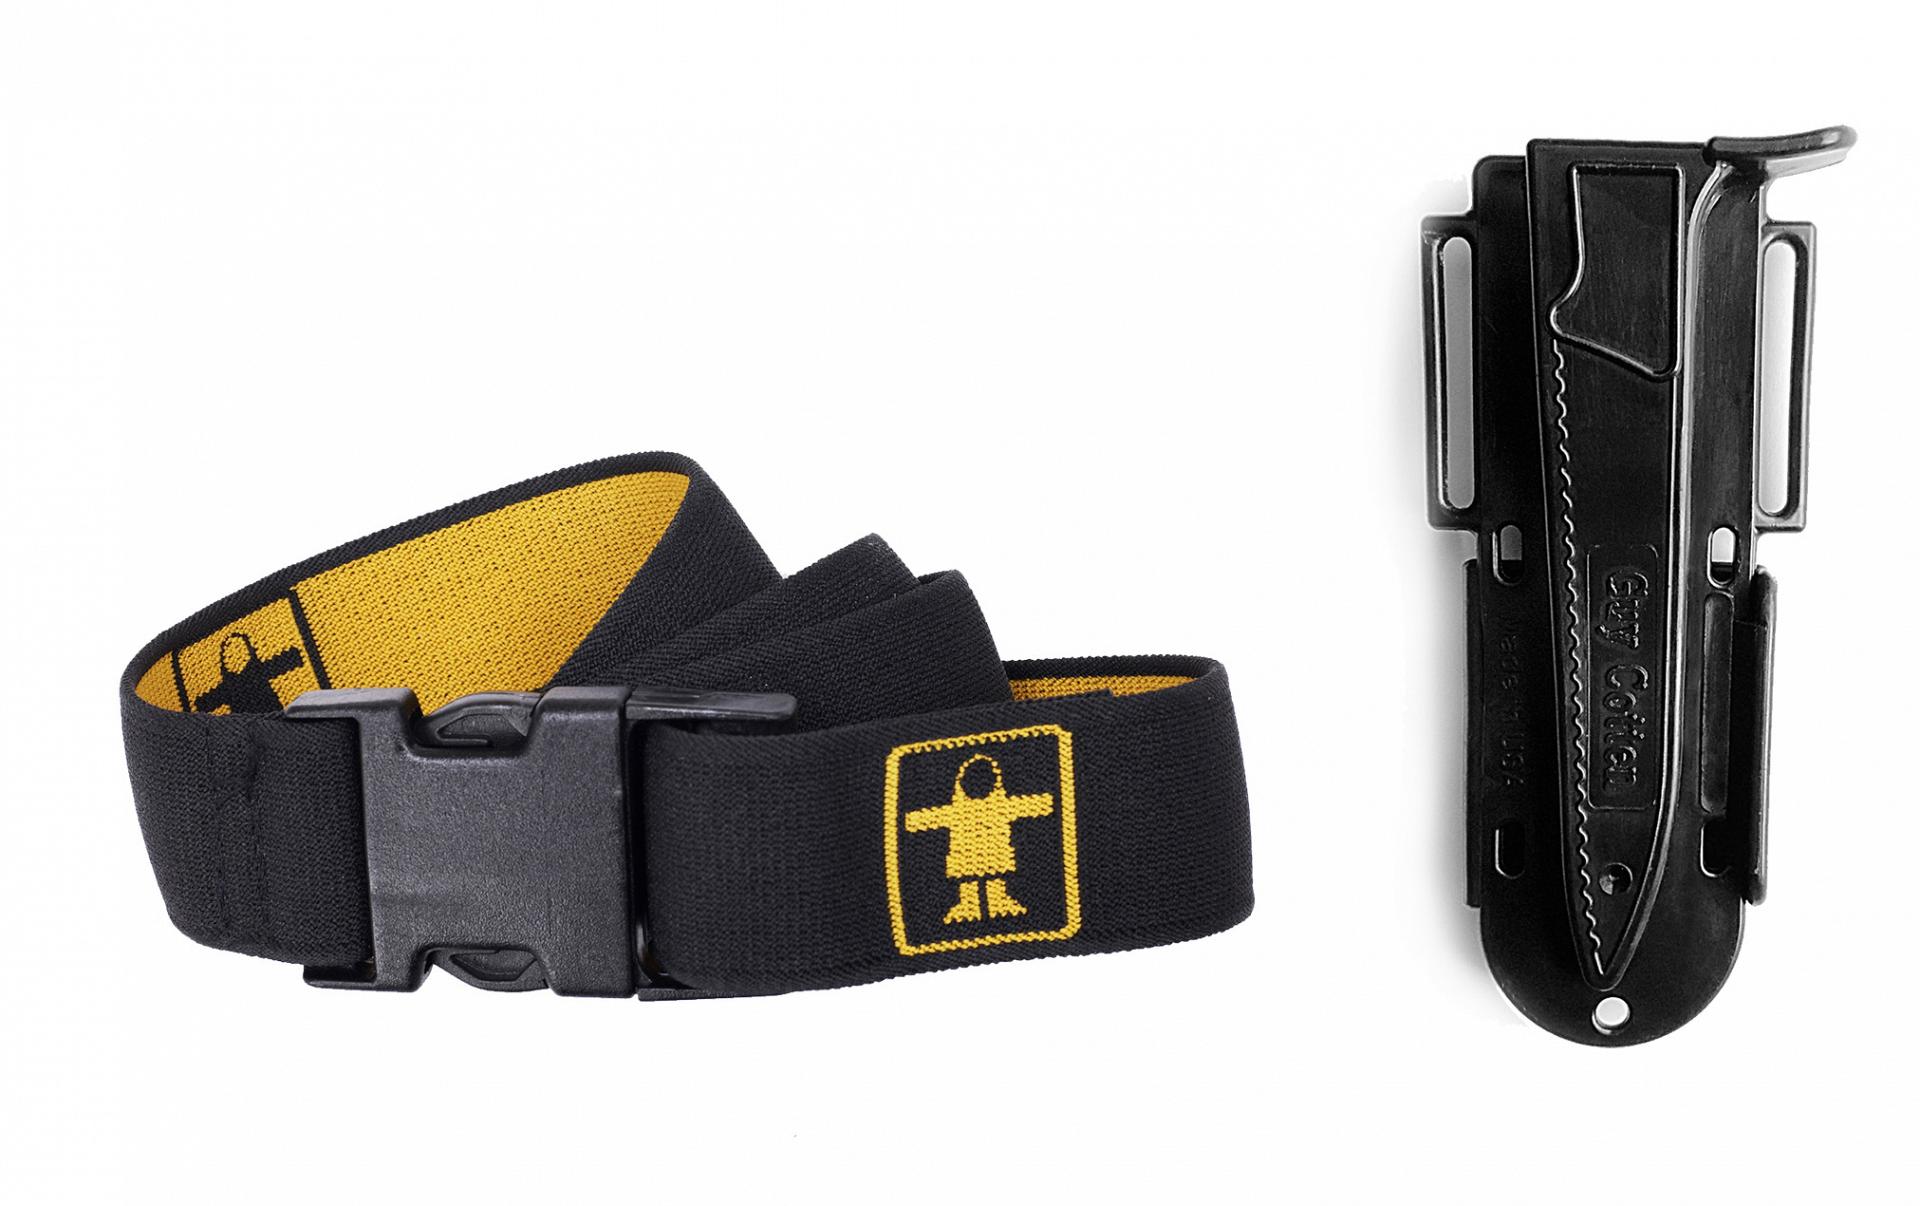 Elastic belt and knife holder